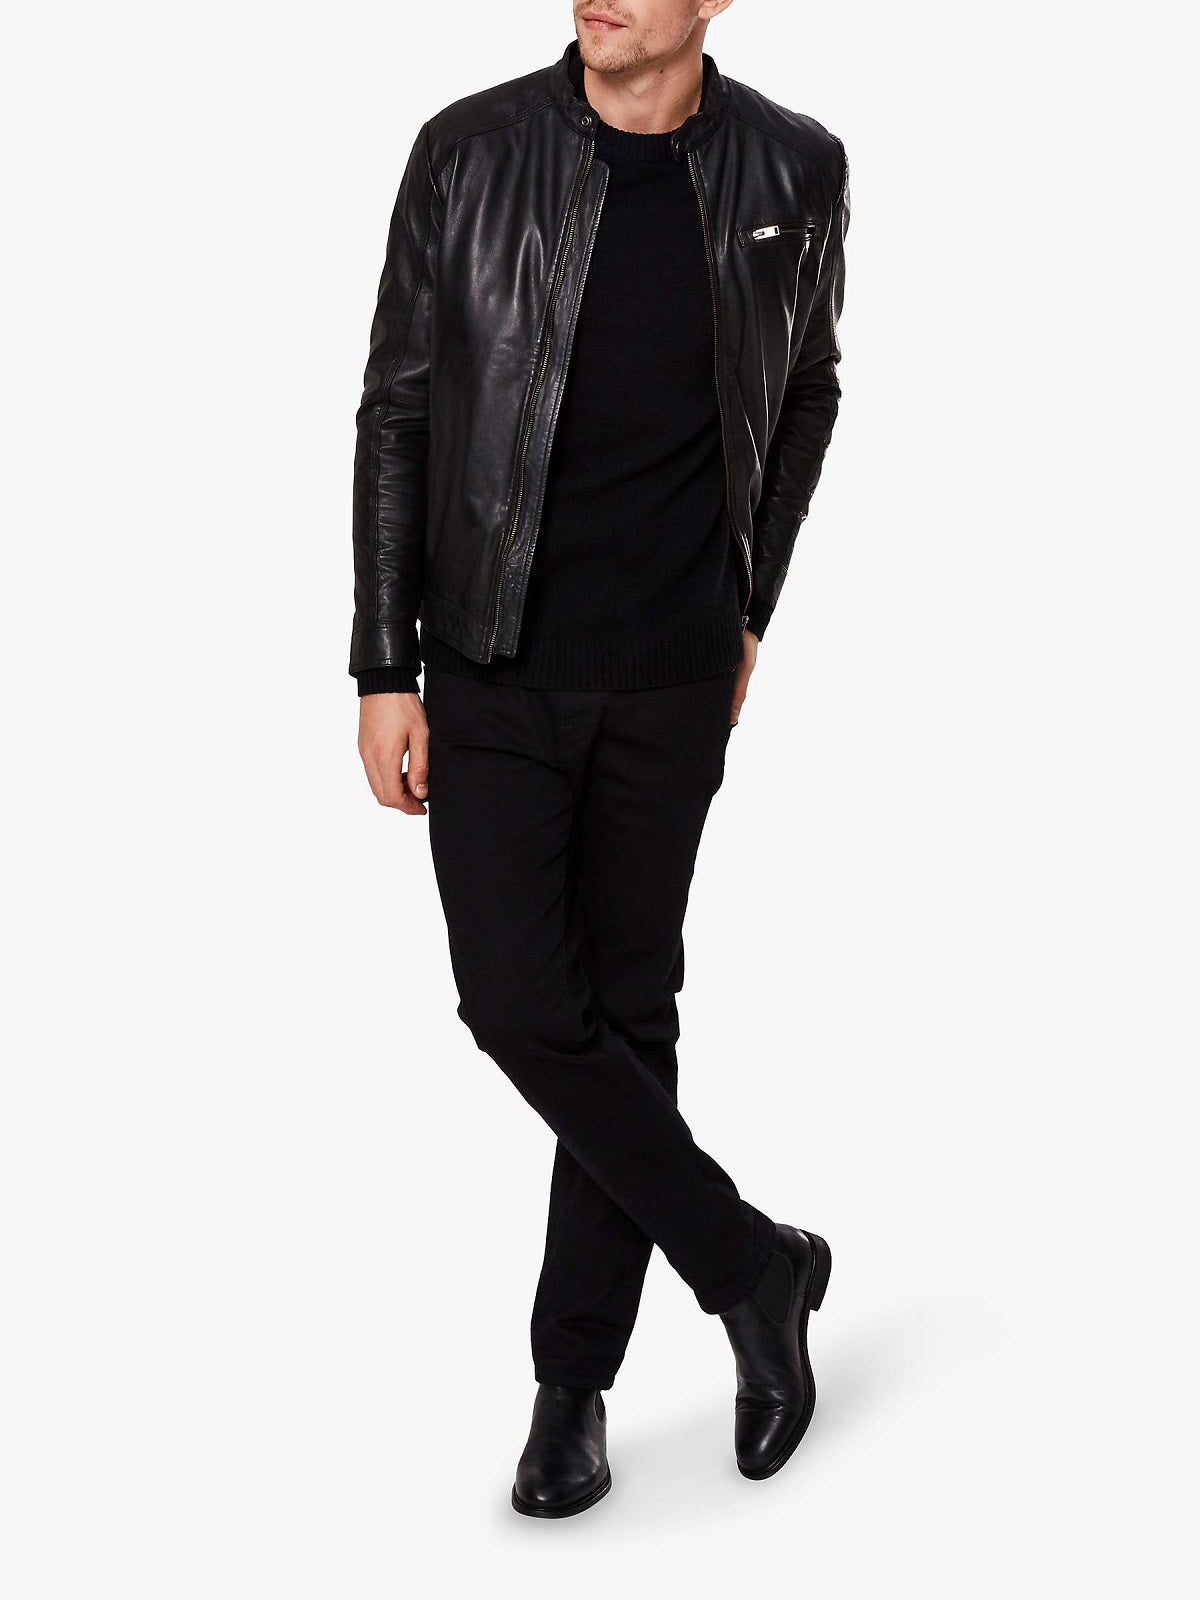 stylish leather jacket for men